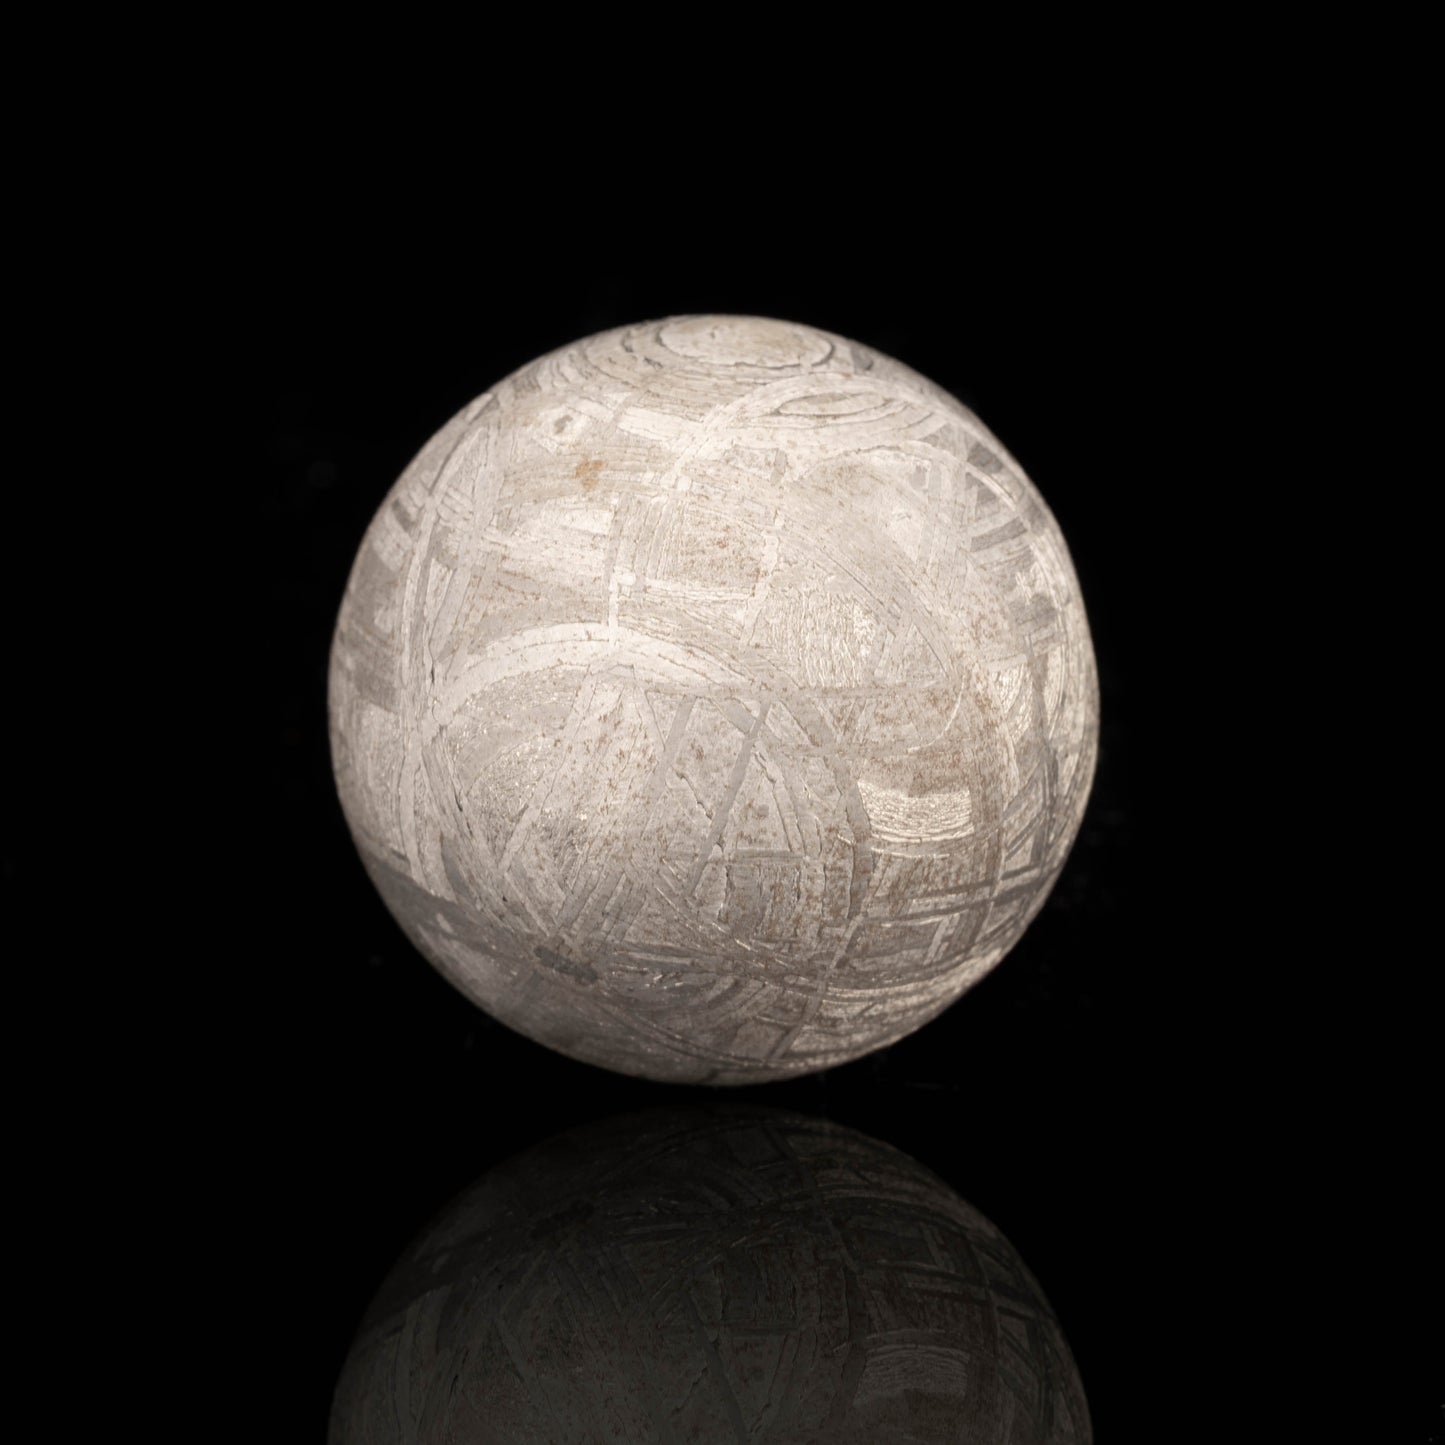 Muonionalusta Meteorite Sphere // 66 Grams